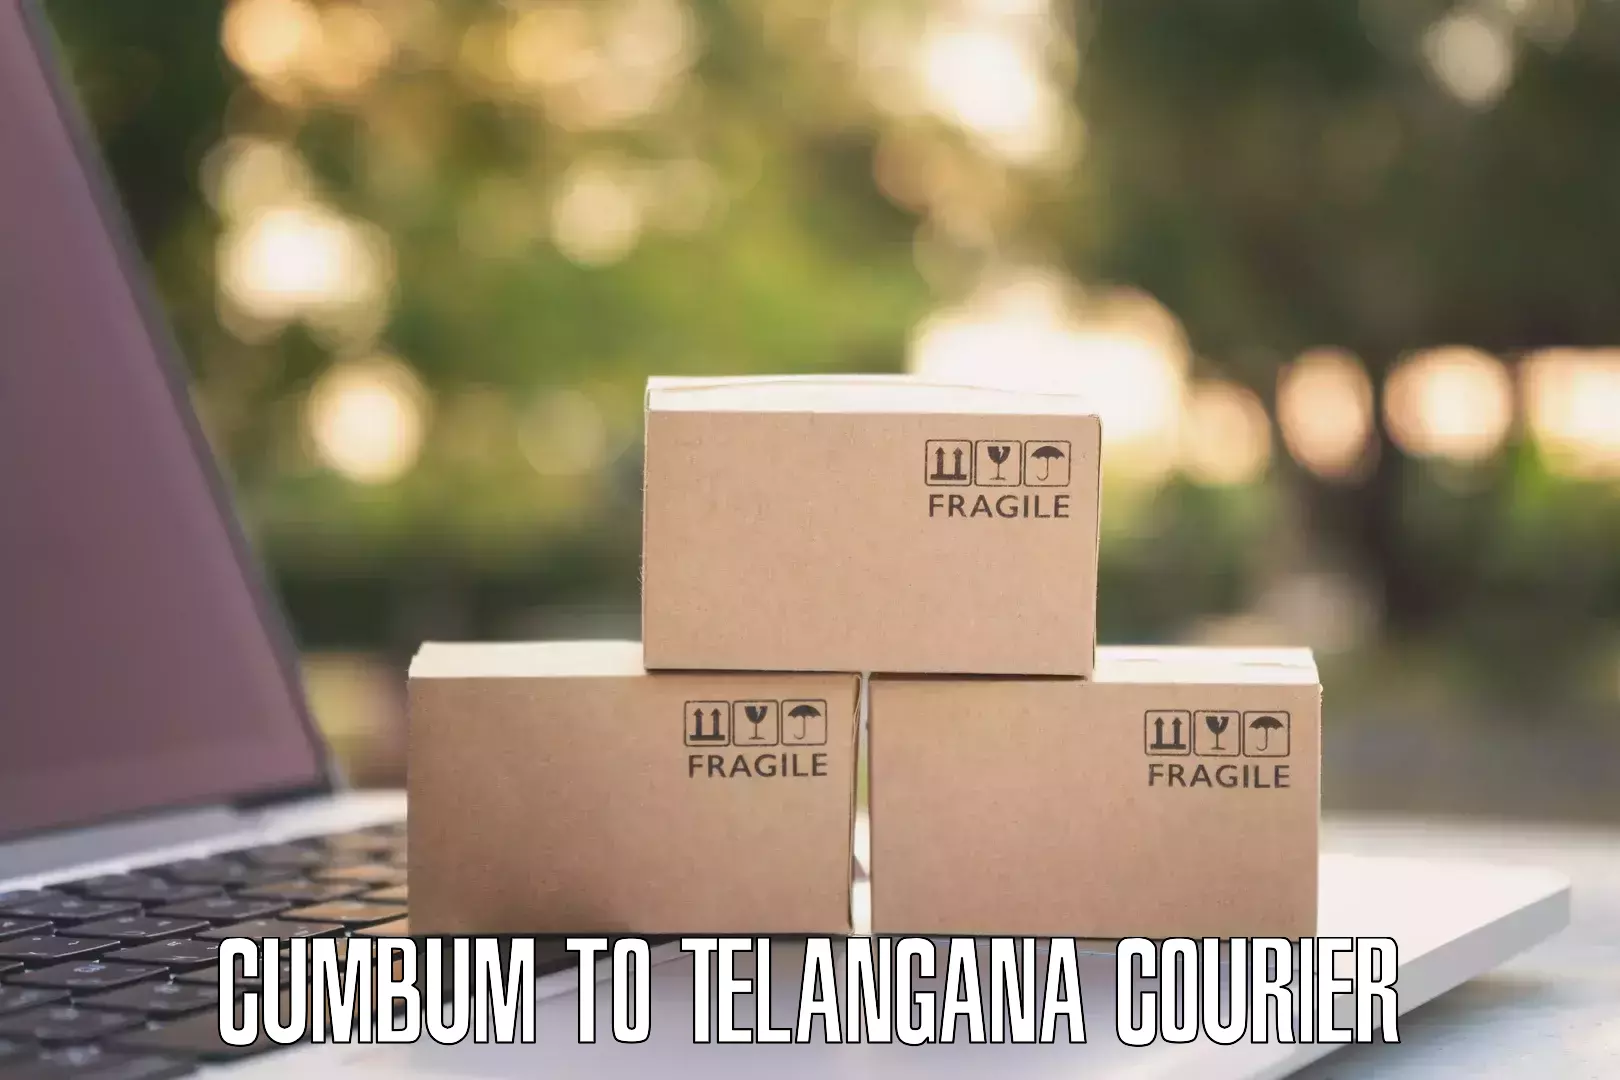 Next day courier Cumbum to Telangana